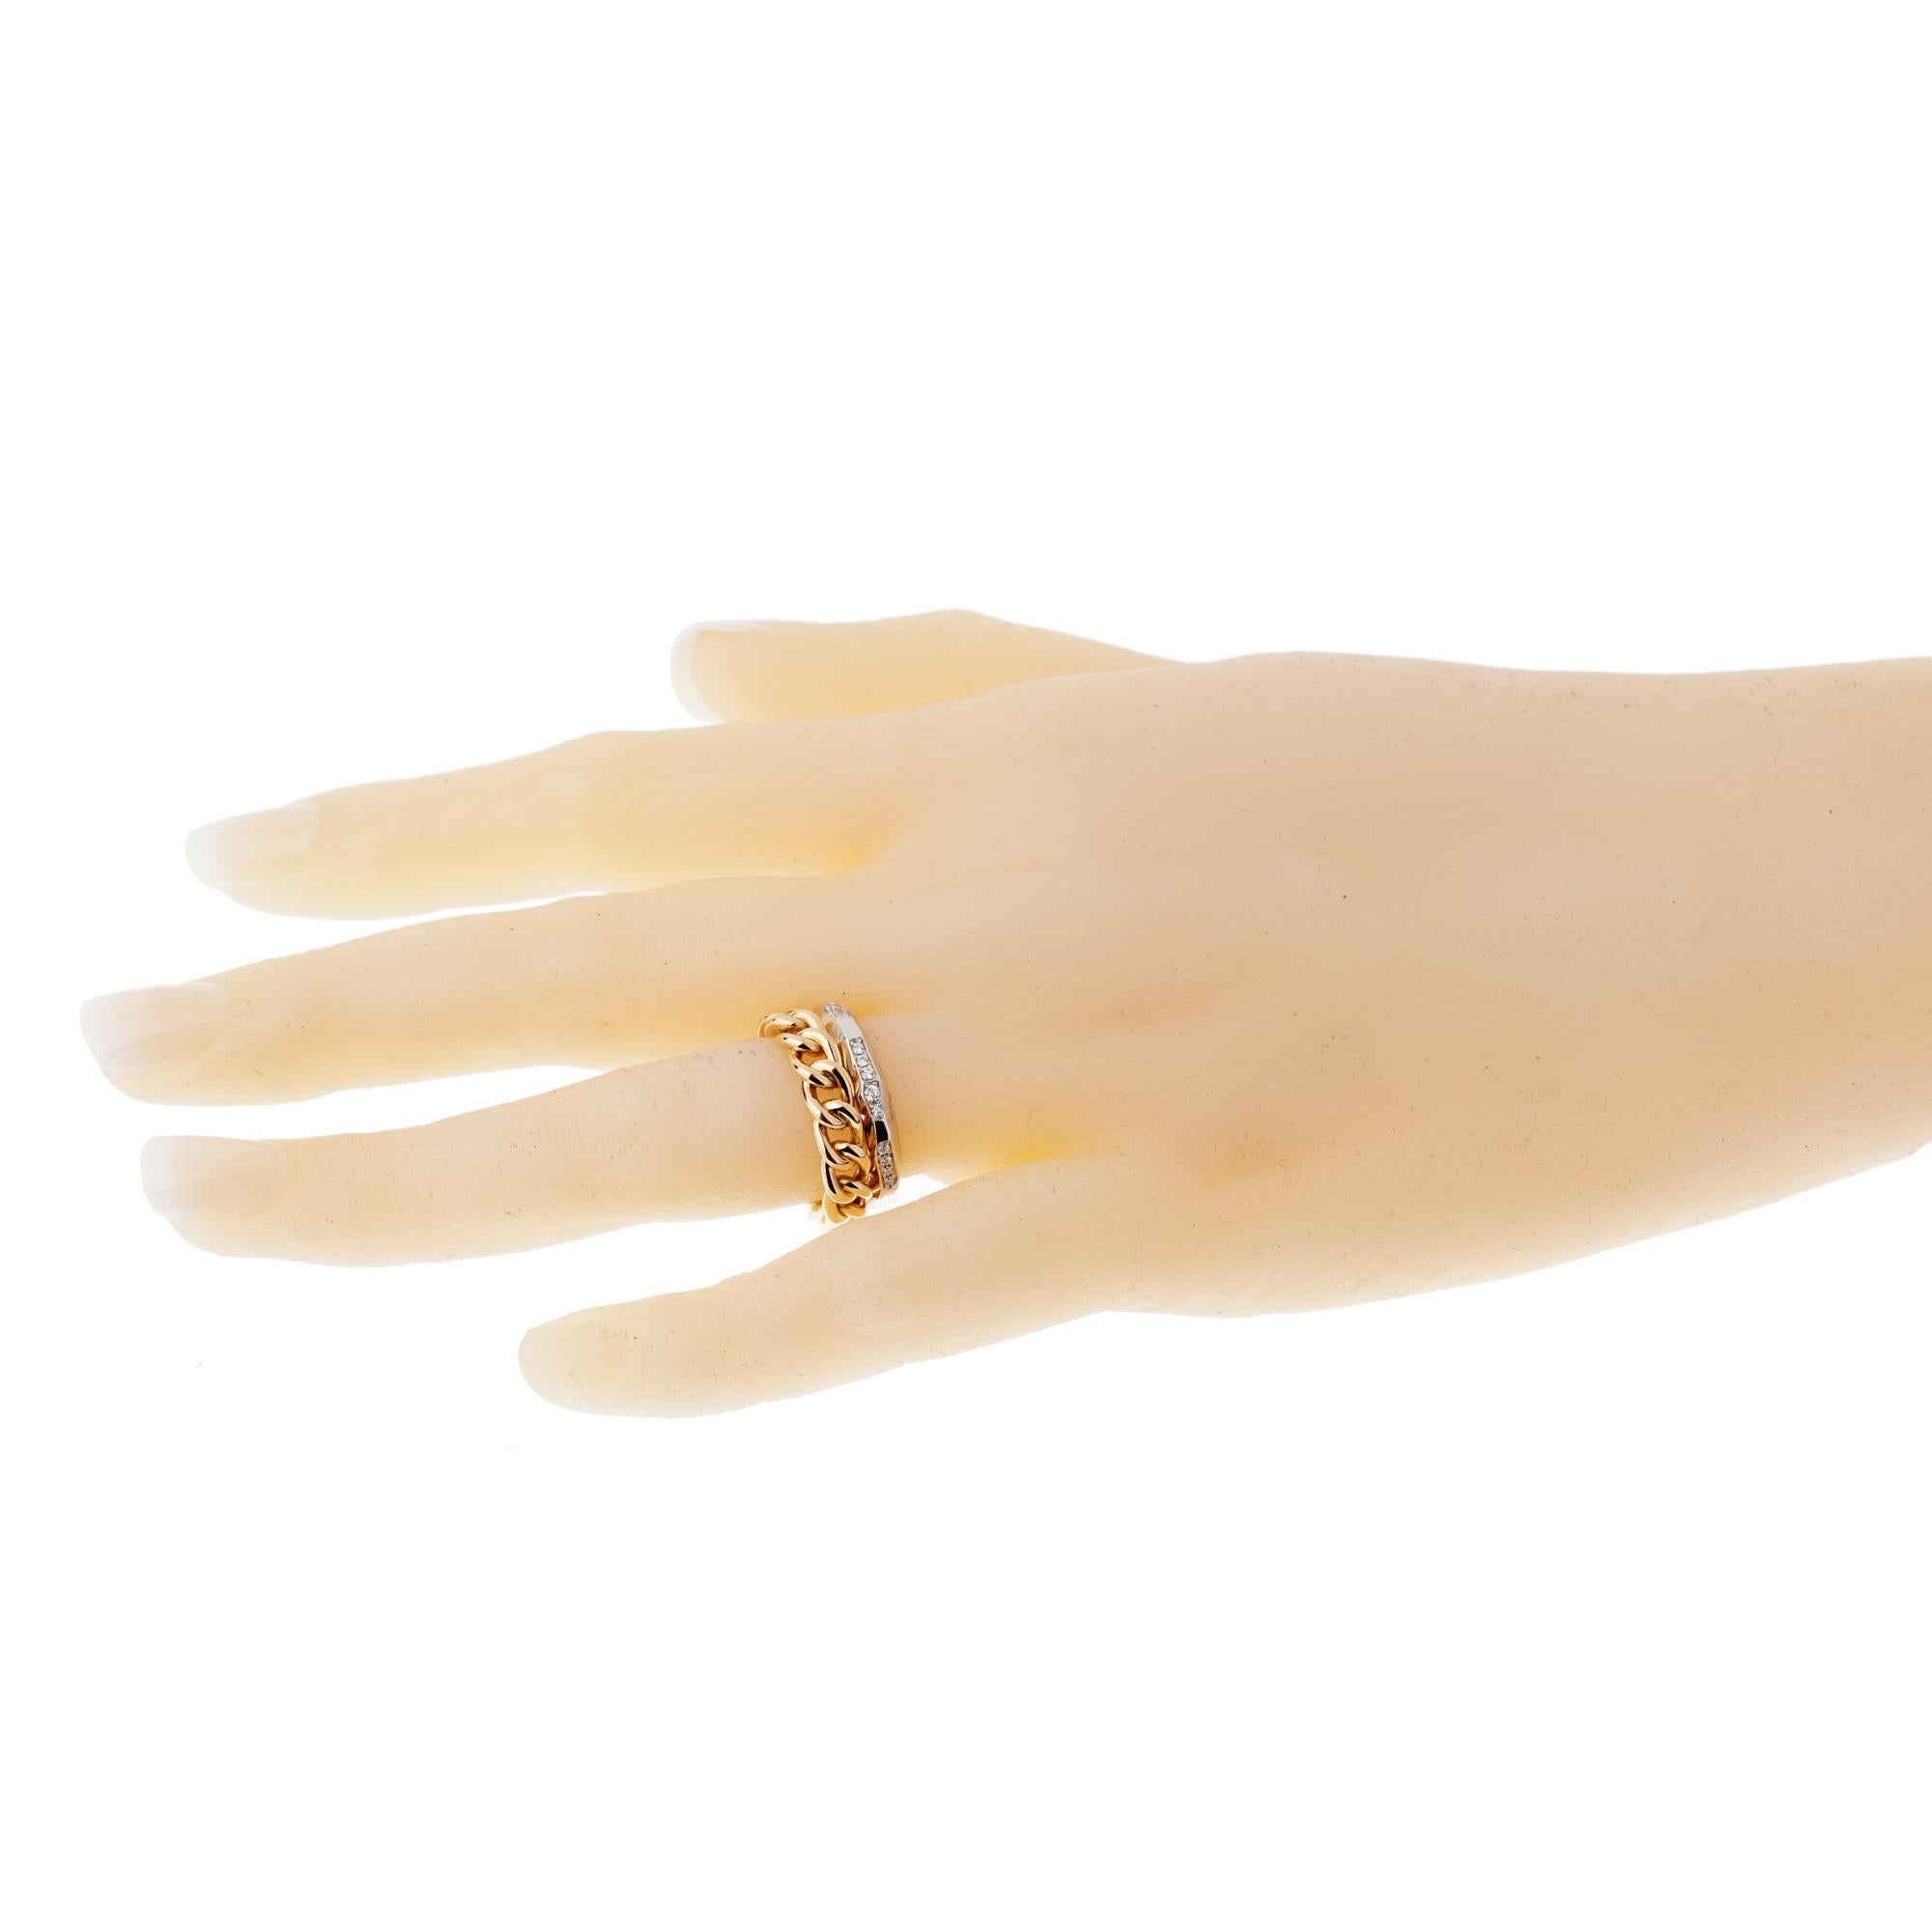 Ein schicker Ring von Pomellato mit einem kubanischen Gliederring aus Roségold, der mit einem facettierten Ring aus 18 Karat Weißgold verbunden ist, der mit Diamanten besetzt ist. Der Ring misst eine Größe 5 und .27